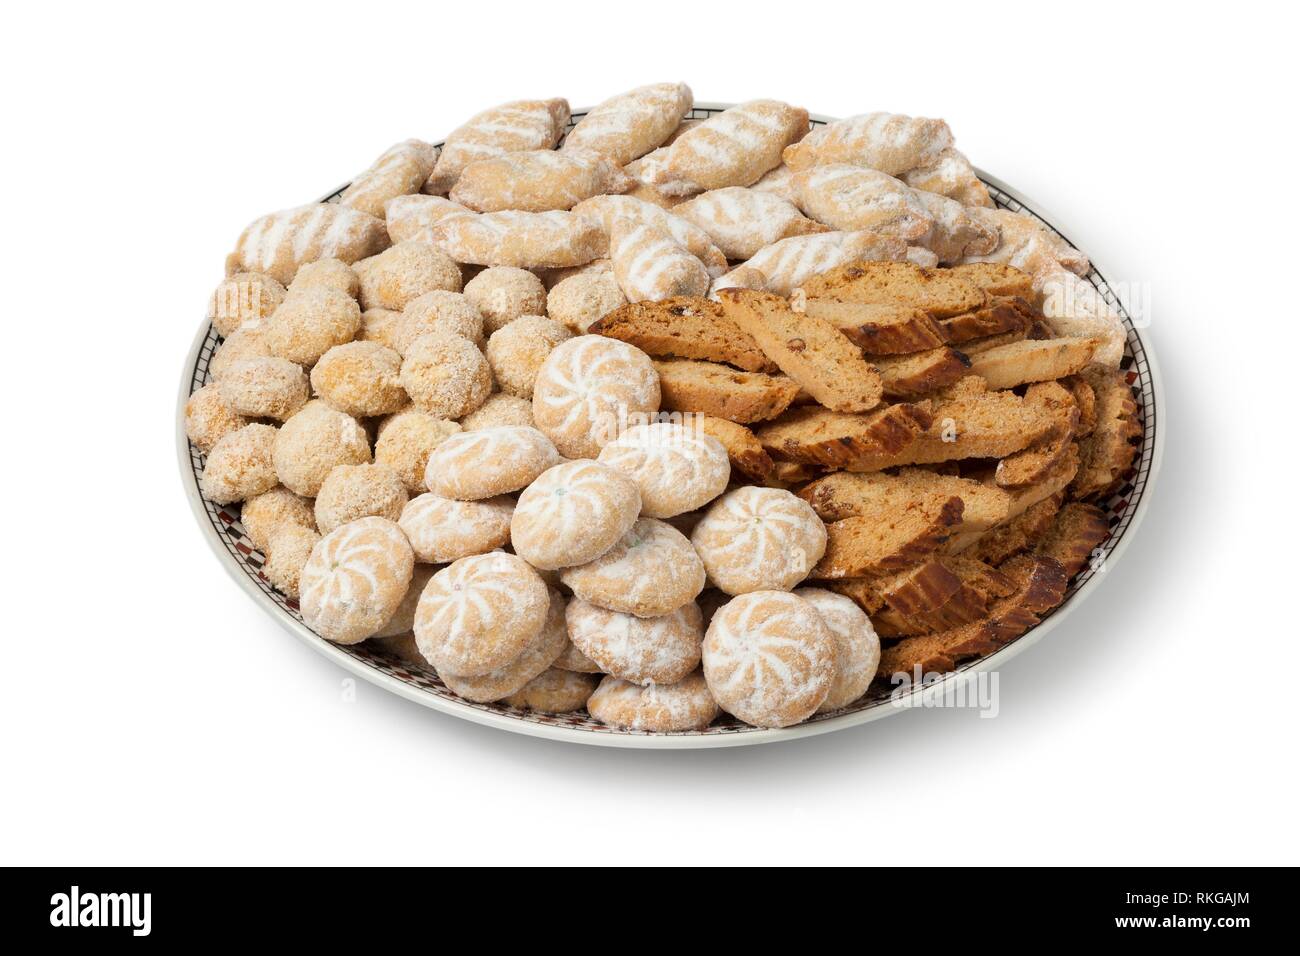 Plato con galletas caseras festiva marroquí aislado sobre fondo blanco. Foto de stock